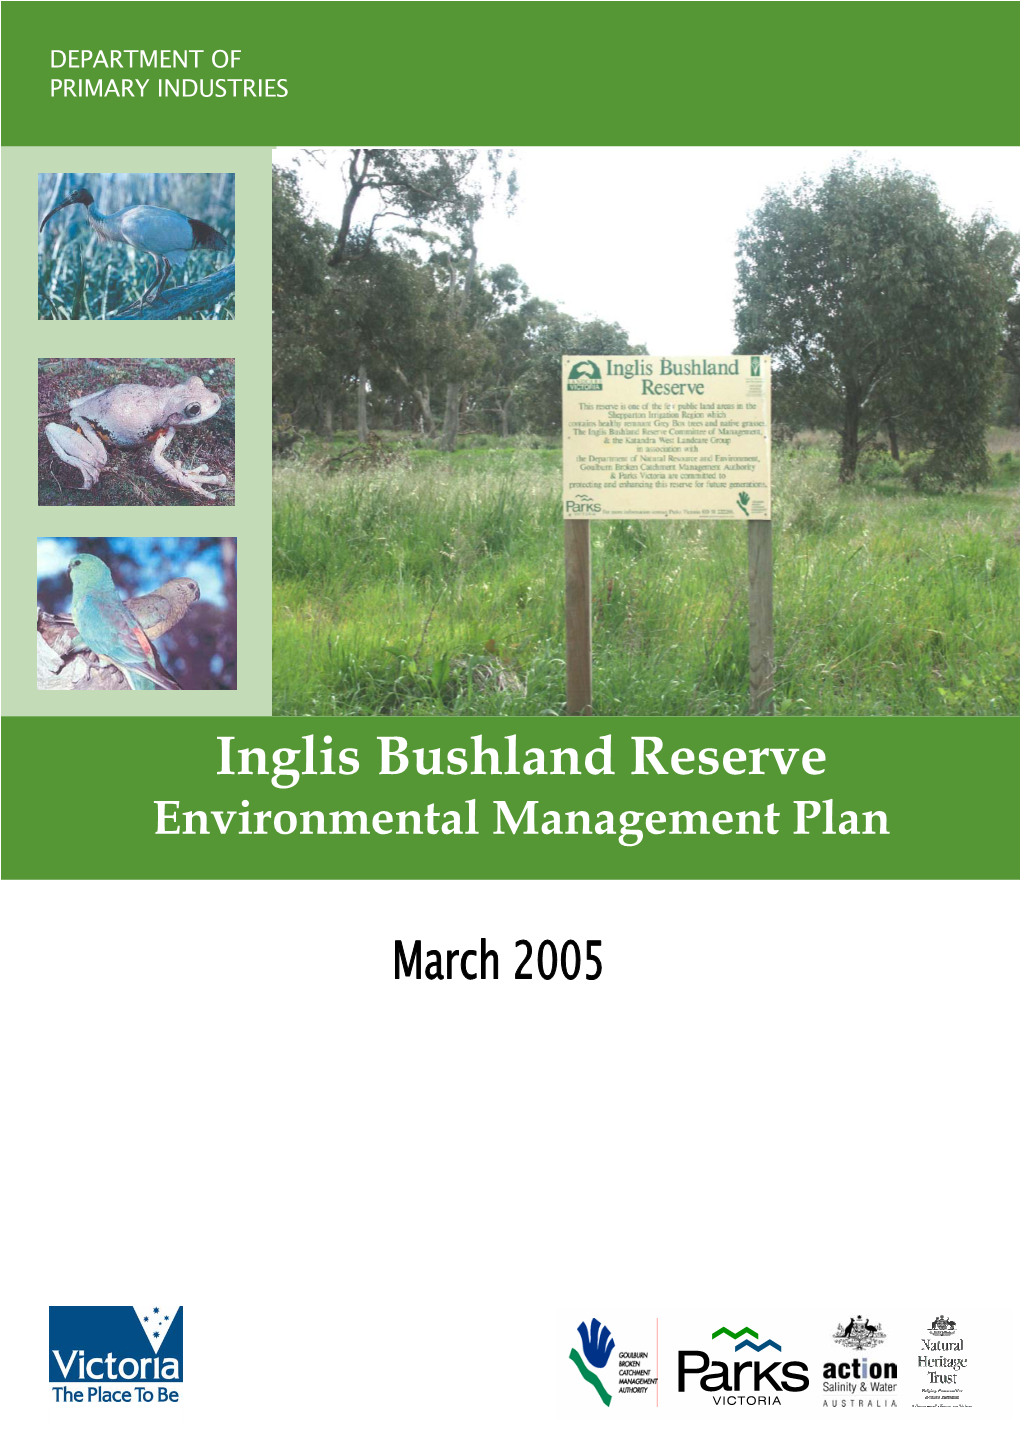 Inglis Bushland Reserve Environmental Management Plan